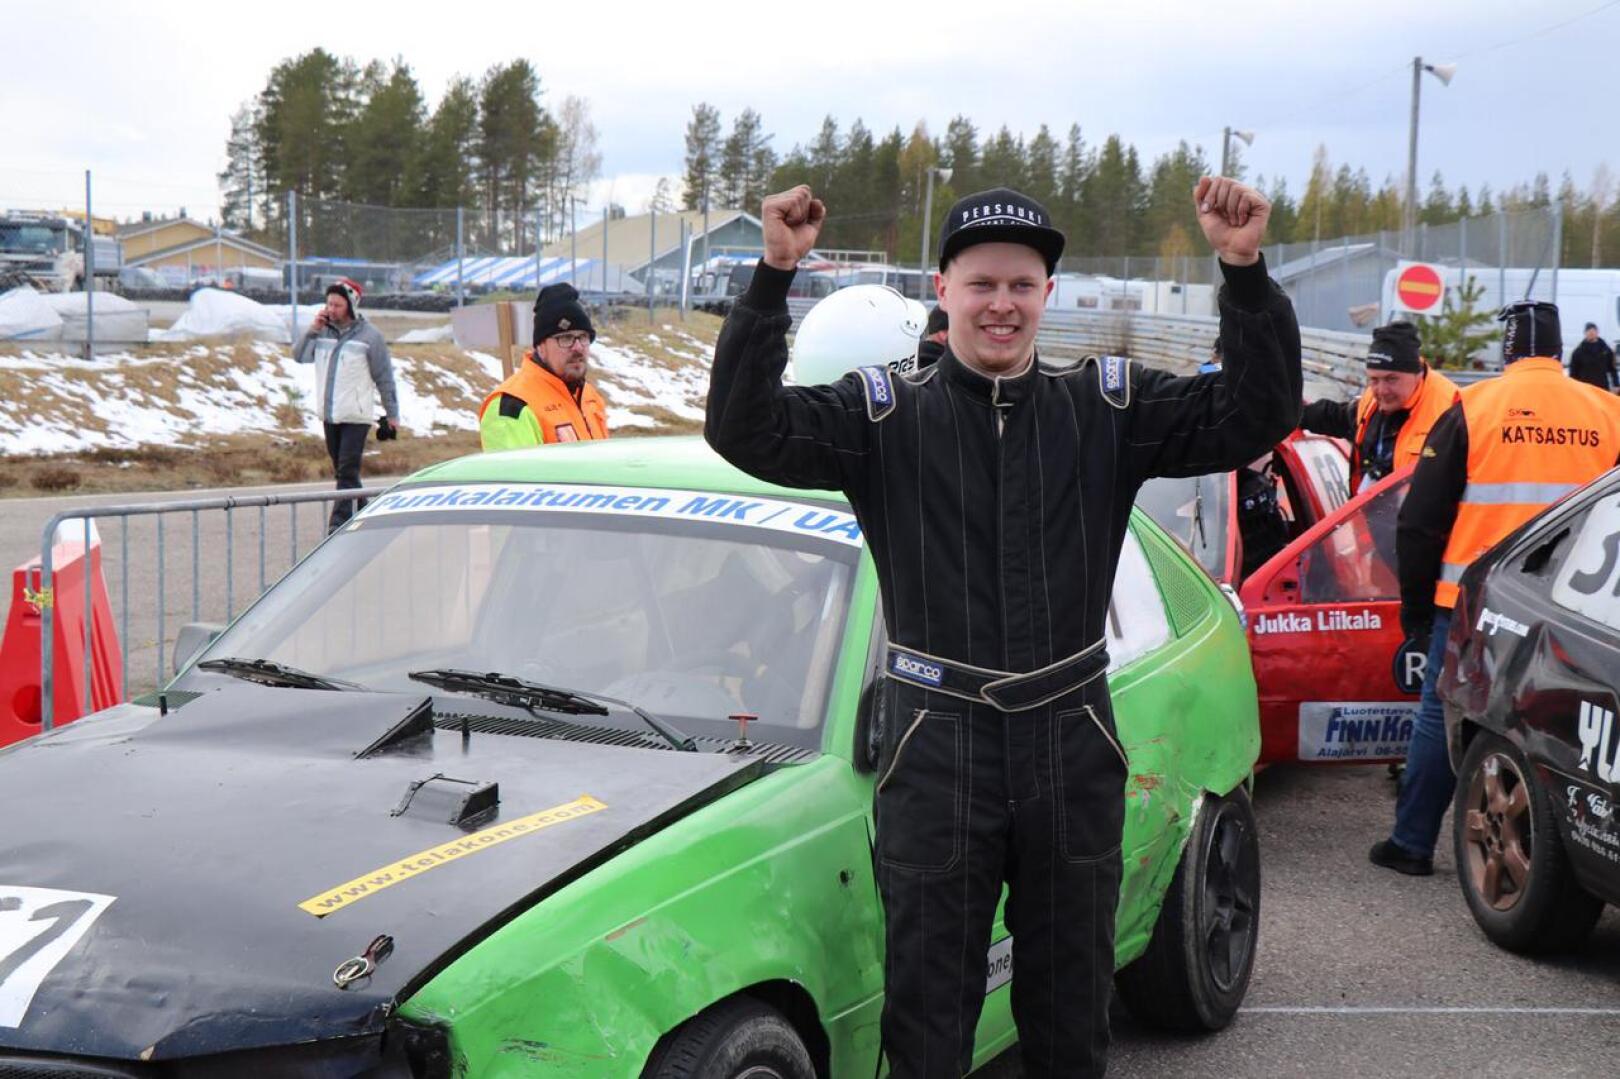 Asfalttikunkun voittaja Kimmo Lampinen tuuletti iloisesti maaliin tultuaan.